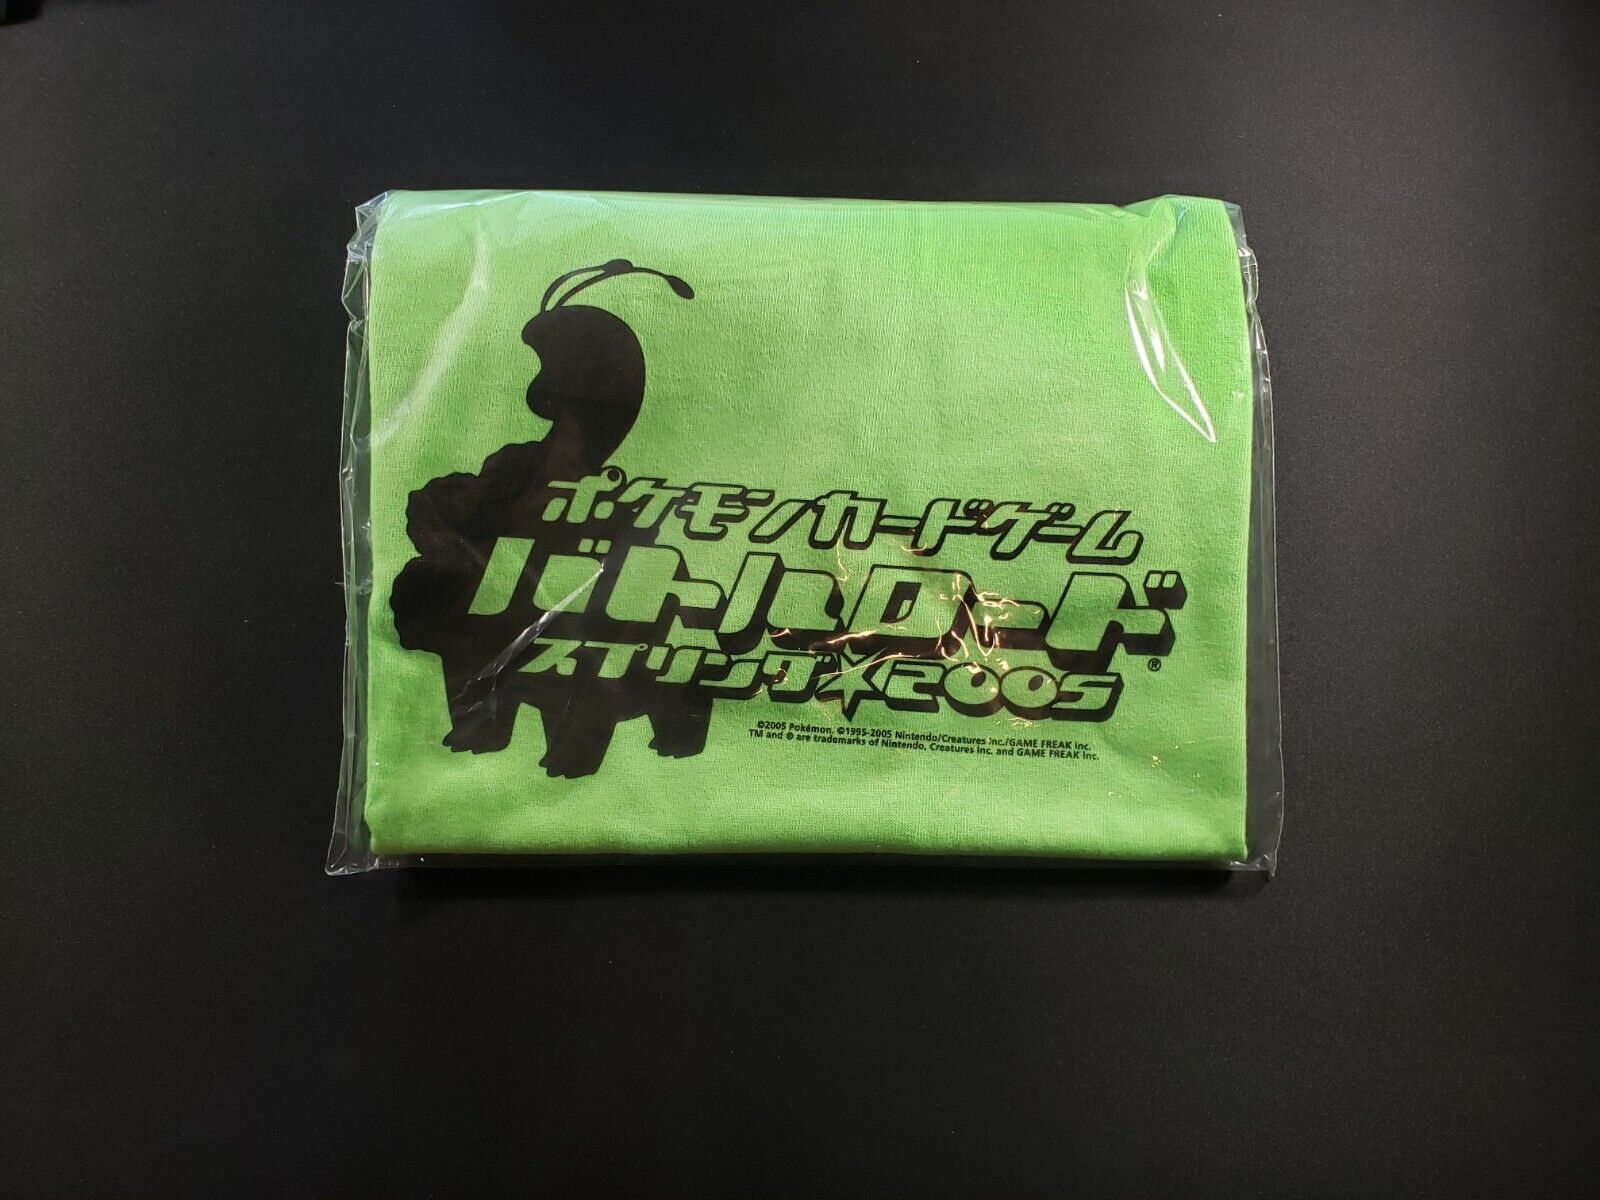 2005 Pokemon Large Japanese Battle Road Tournament T-shirt Sealed Unused